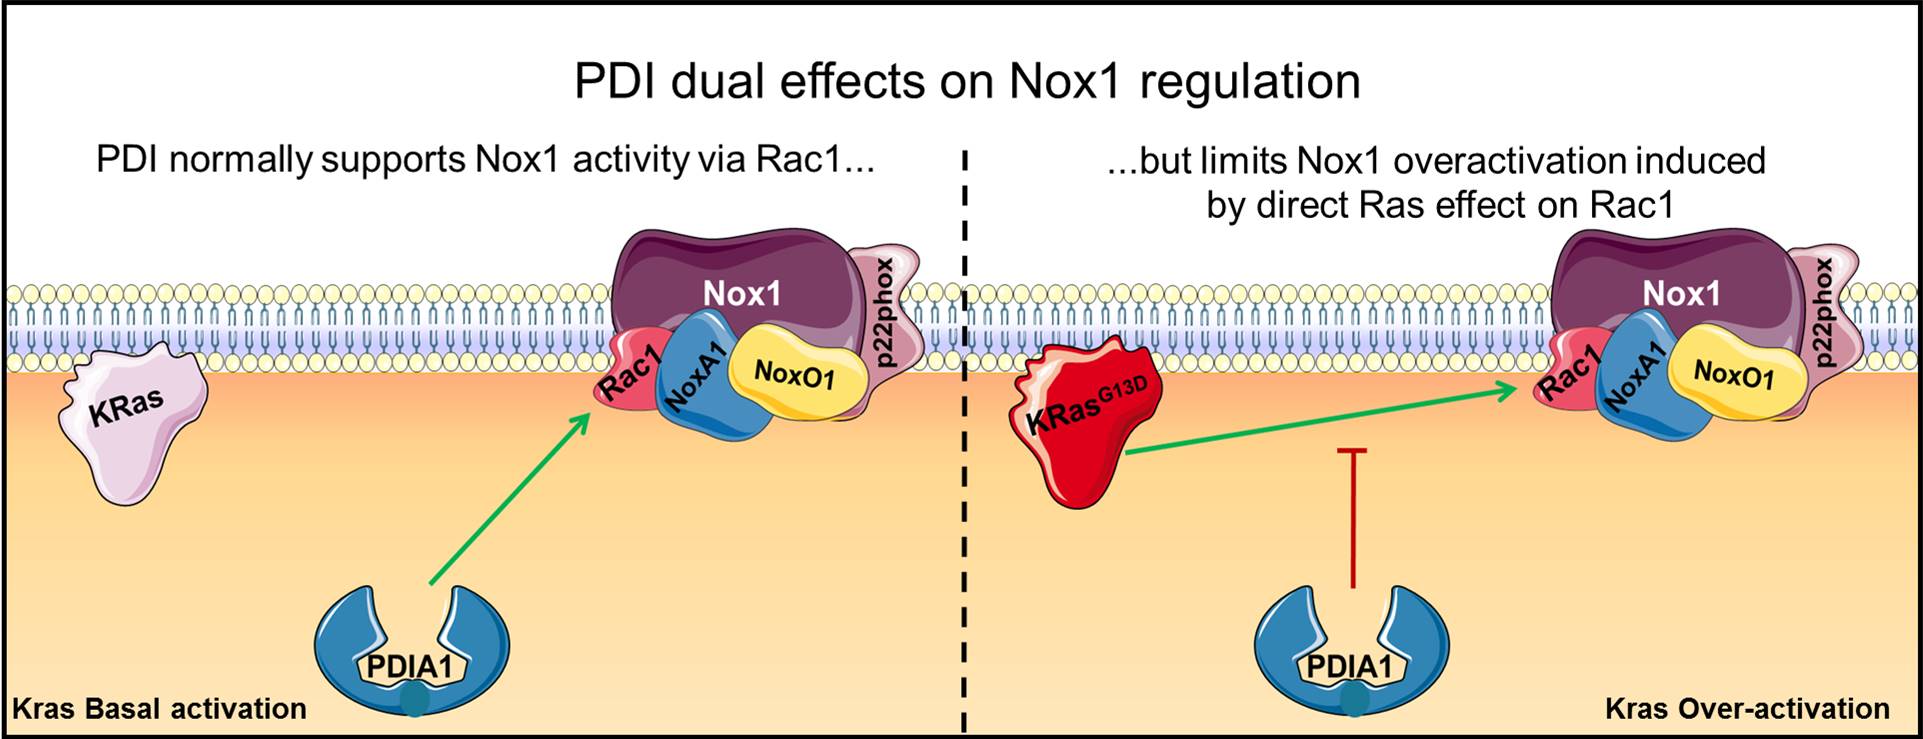 O papel dual da PDIA1 no controle da Nox1 NADPH oxidase no câncer